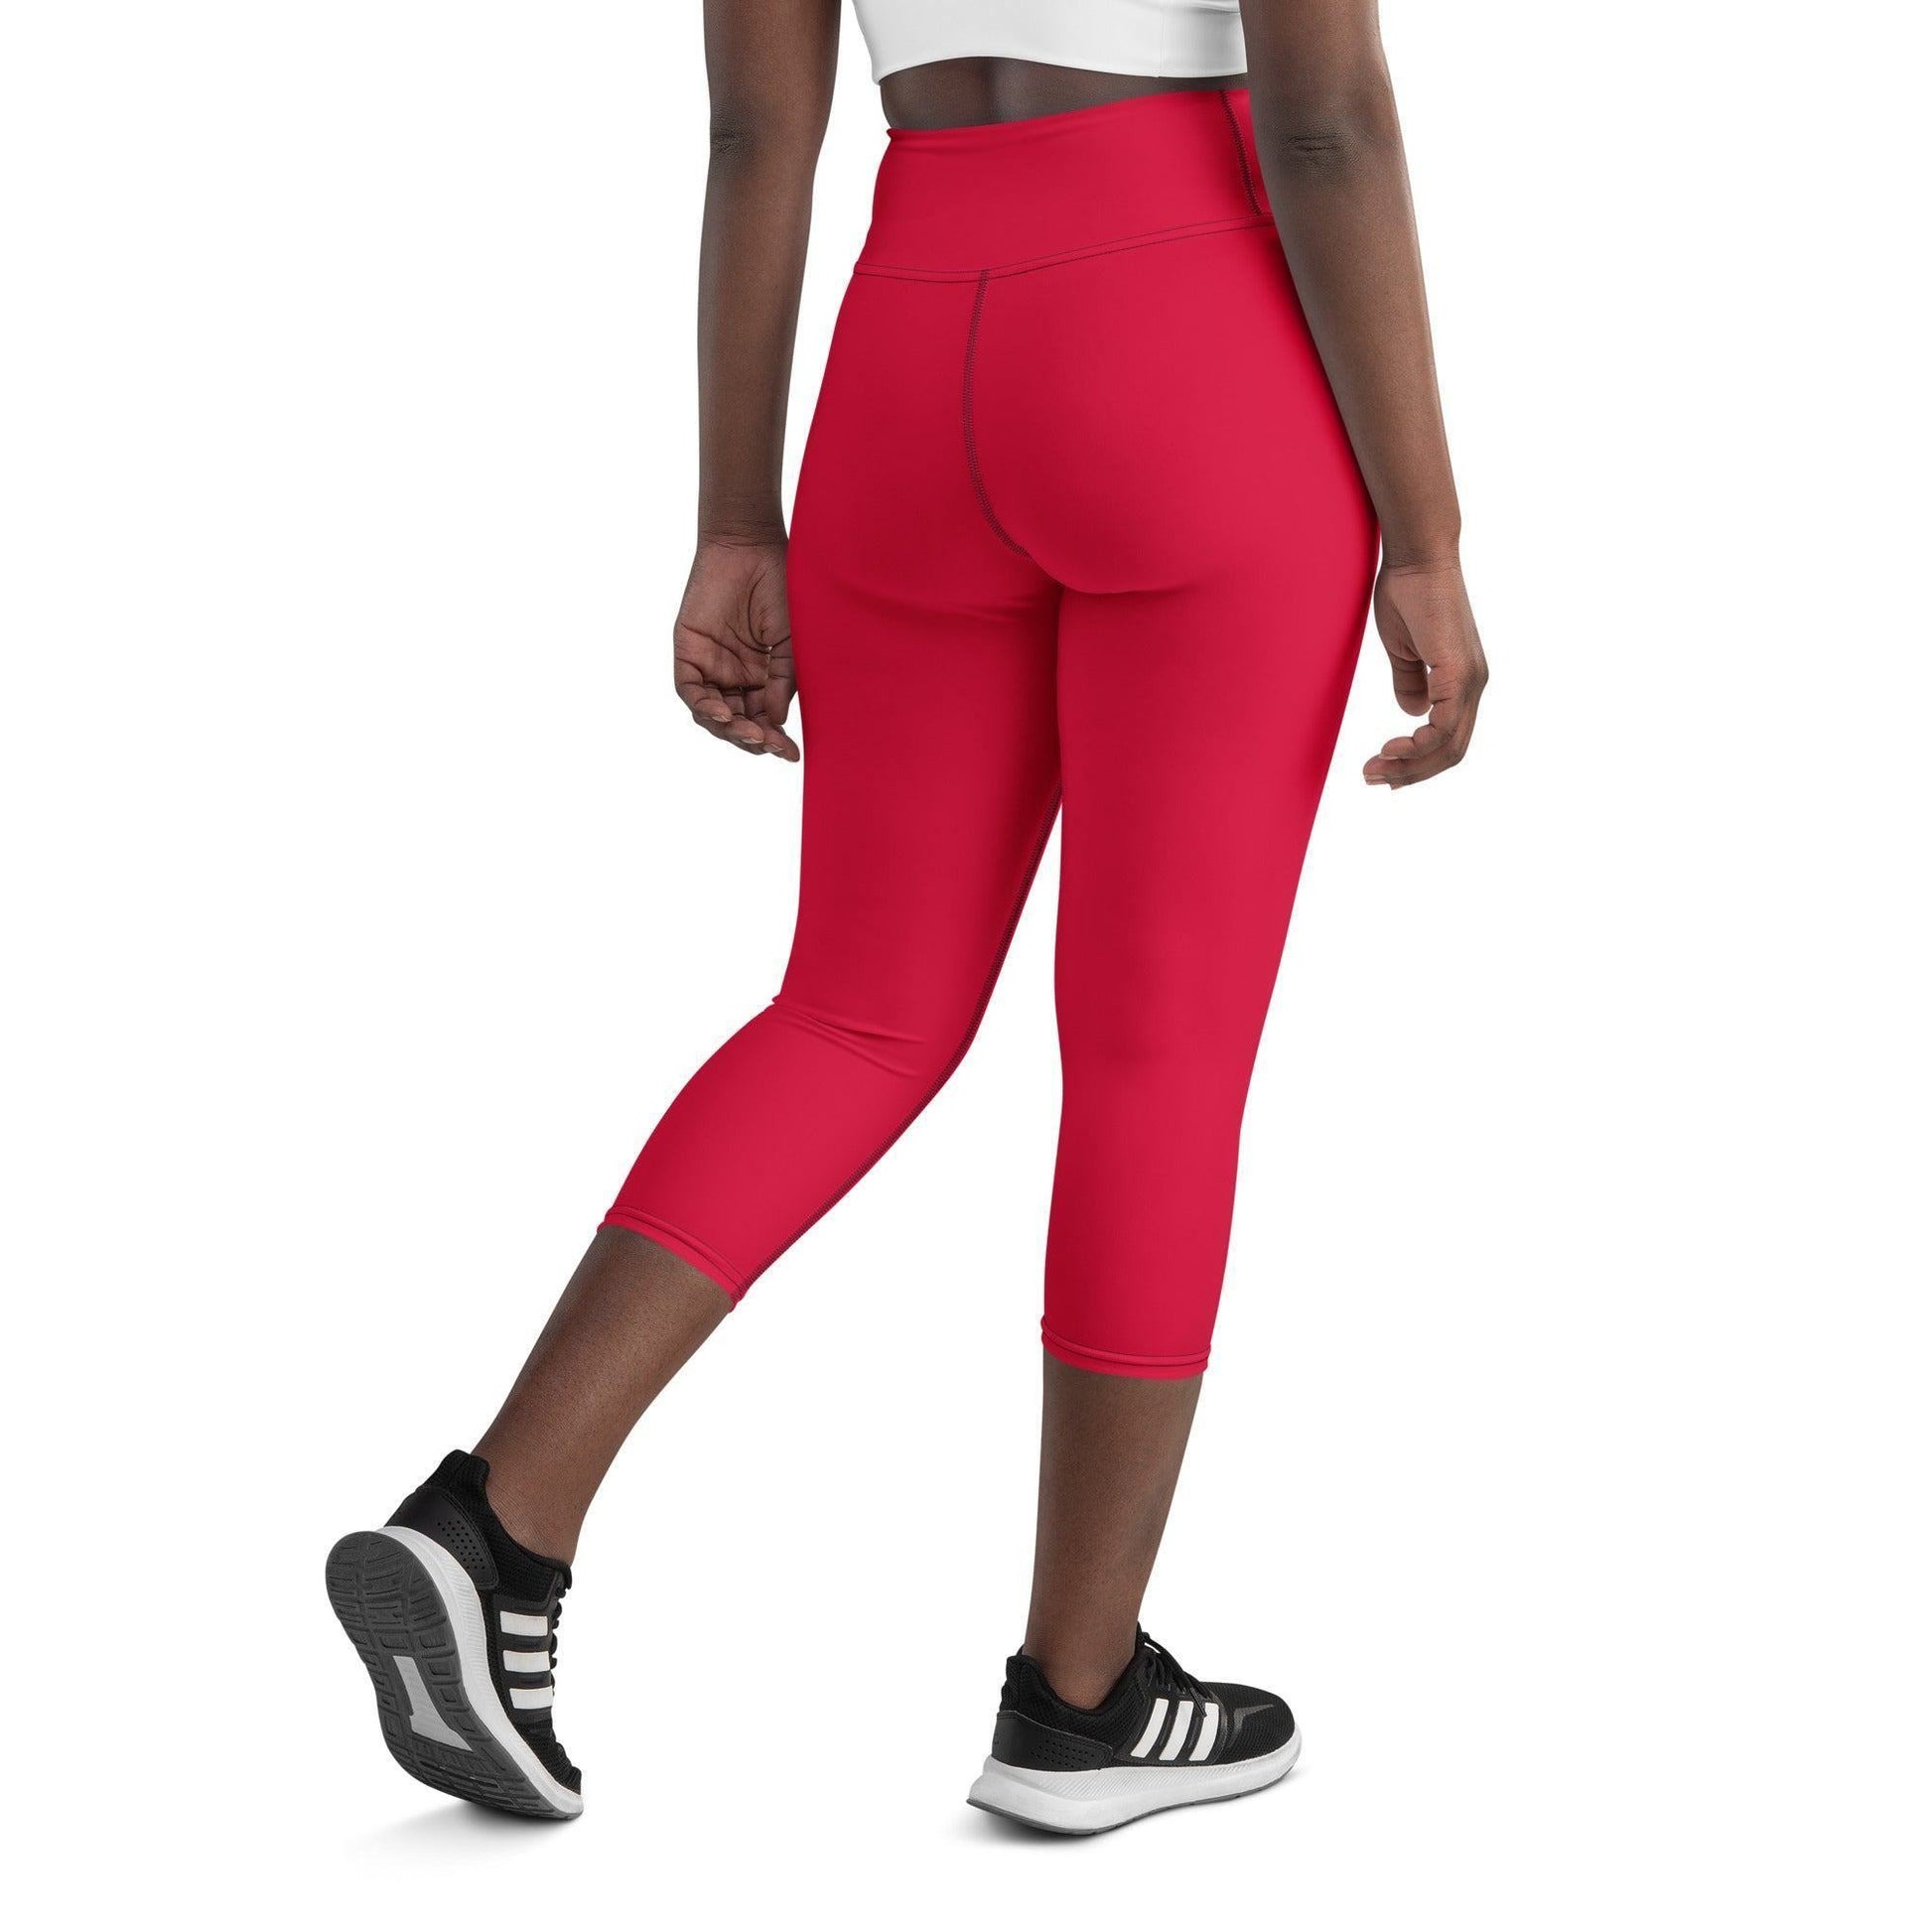 Crimson Damen Yoga Capri Leggings -- Crimson Damen Yoga Capri Leggings - undefined Yoga Capri Leggings | JLR Design